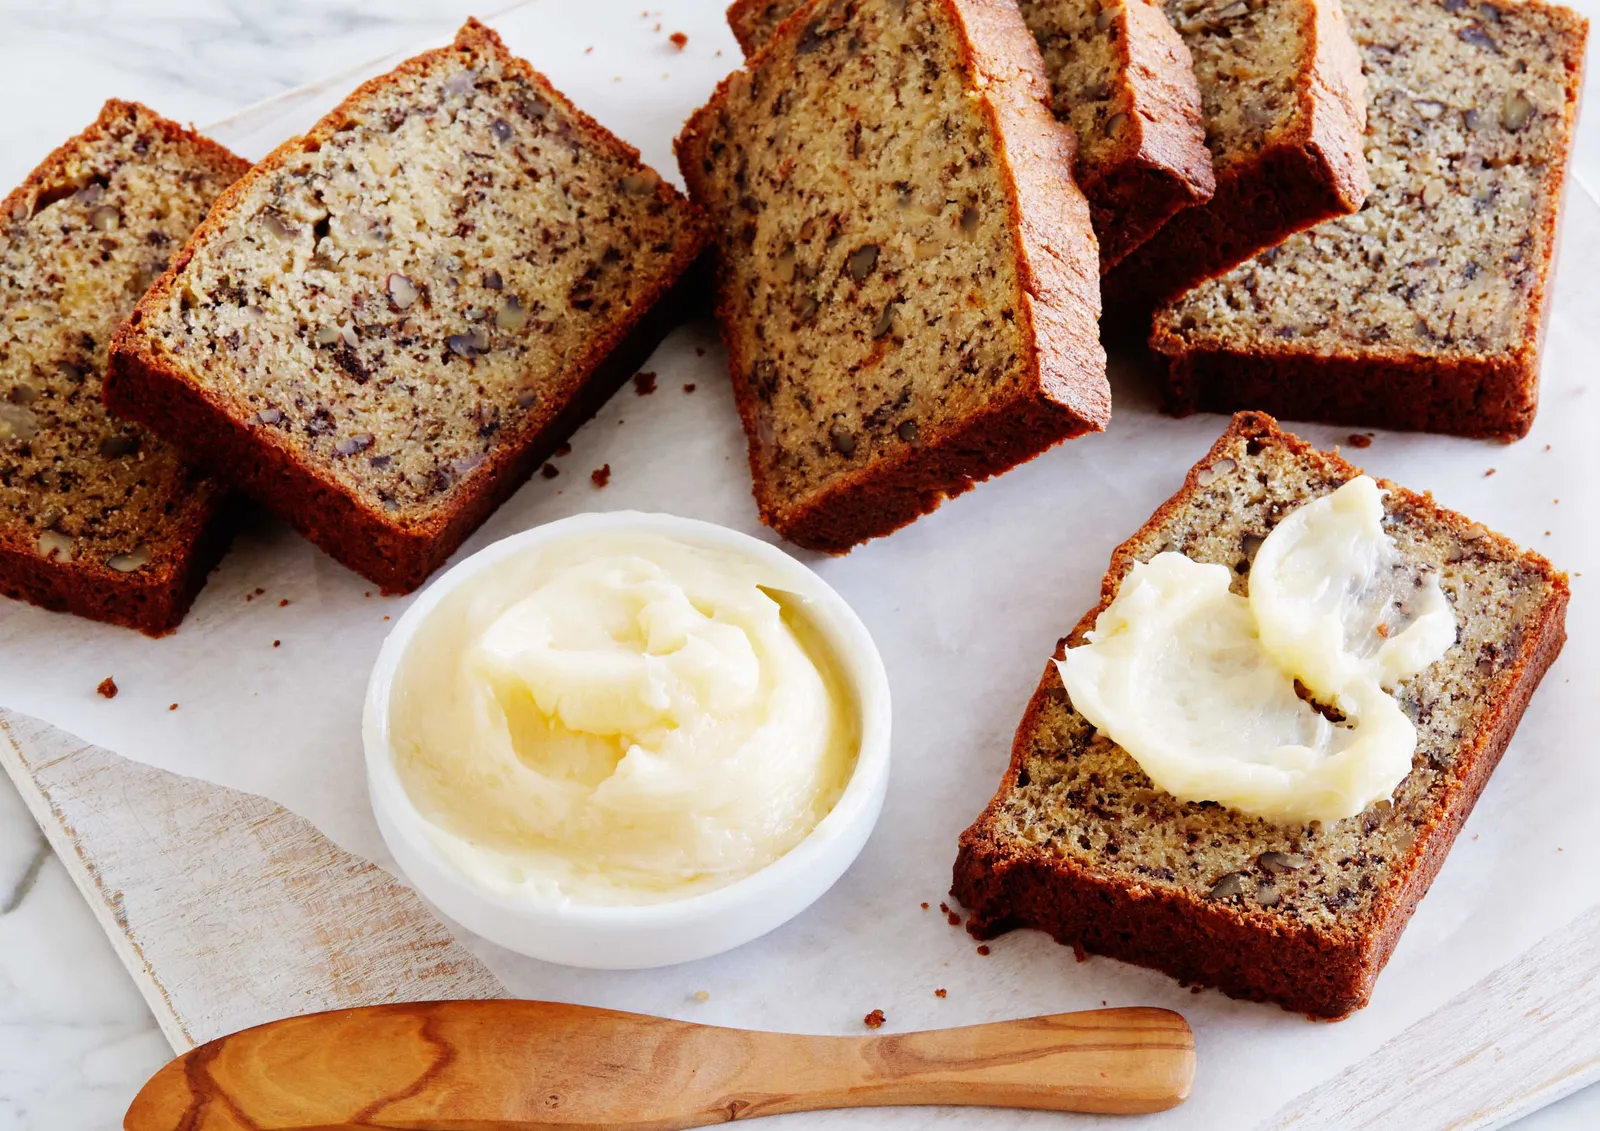 Resep Mudah dan Sehat Membuat Banana Bread, Buat Yuk Bela!